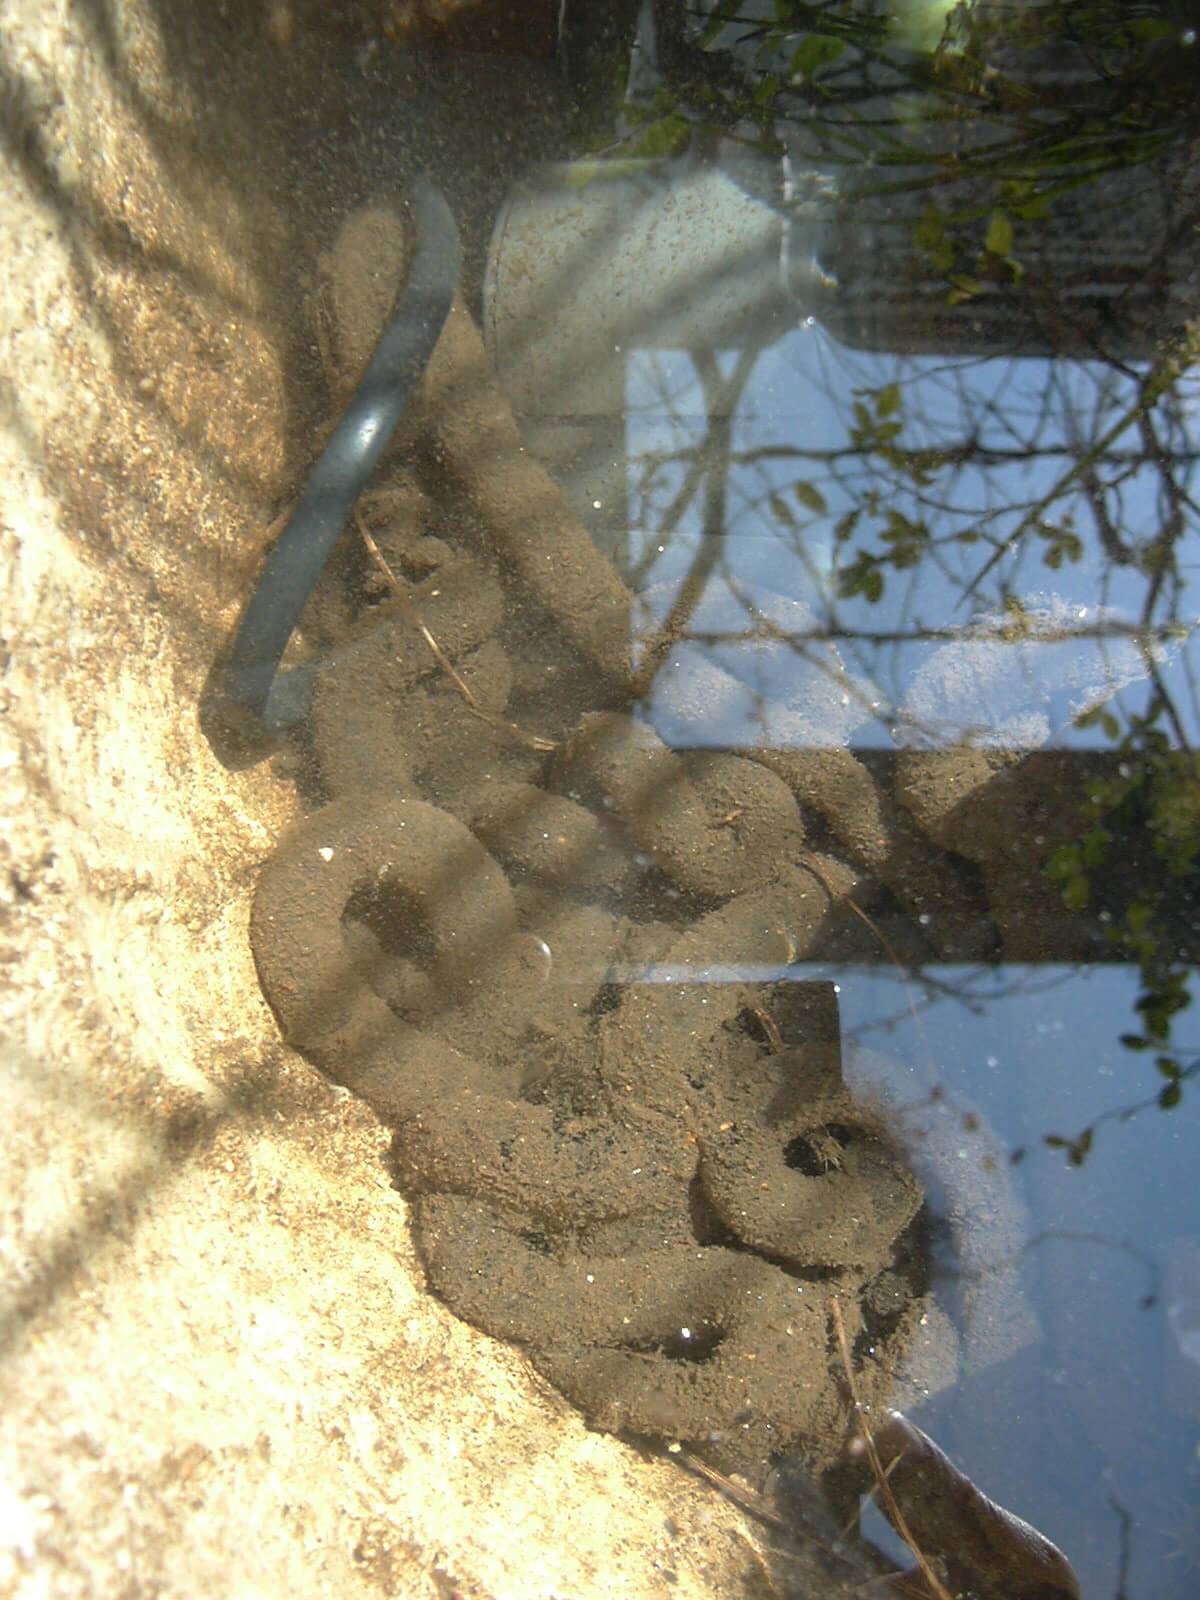 2009年も庭の池におびただしい蛙の卵がありました